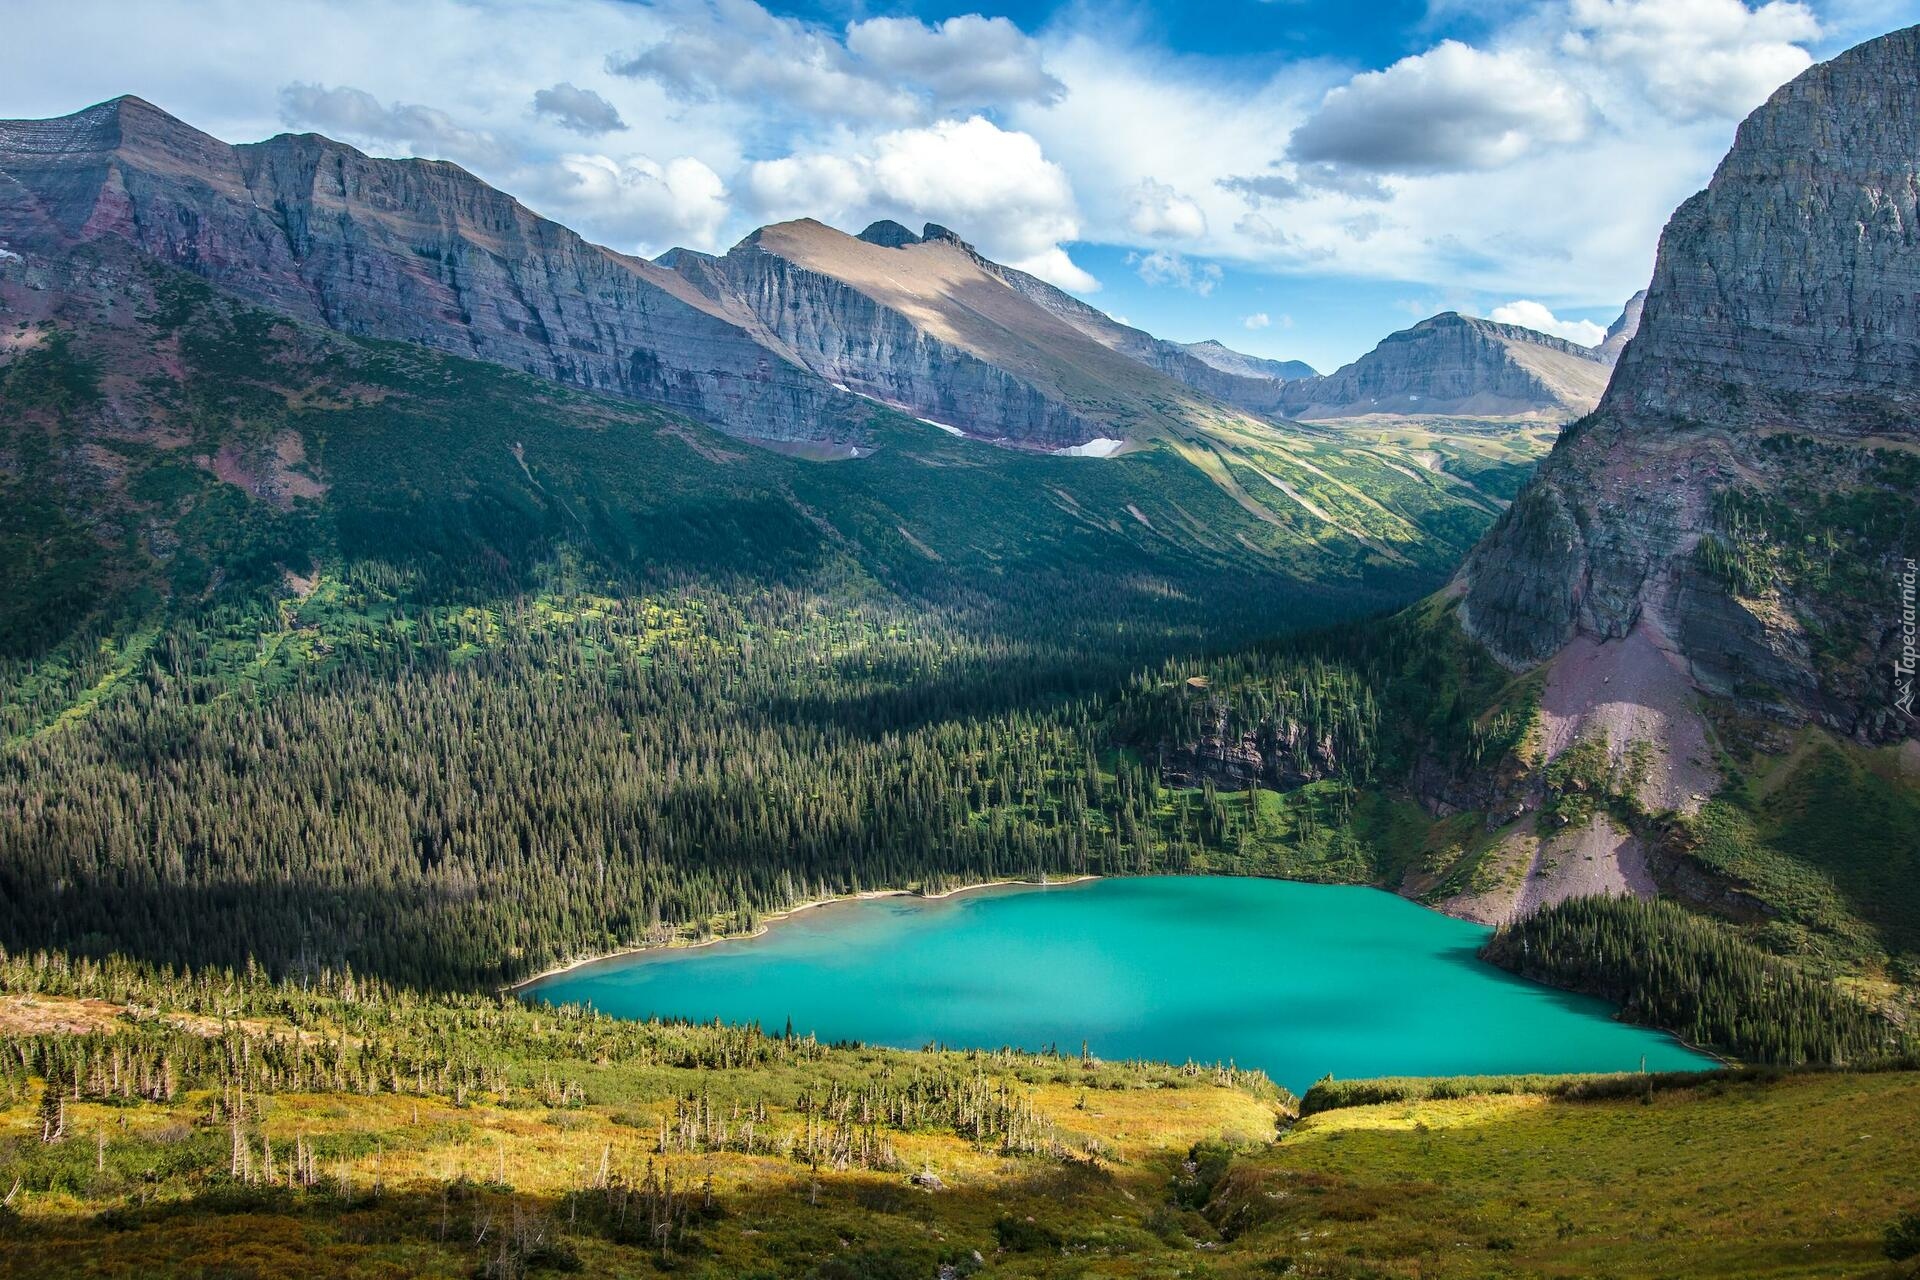 Park Narodowy Glacier, Jezioro, Grinnell Lake, Góry, Drzewa, Lasy, Chmury, Montana, Stany Zjednoczone